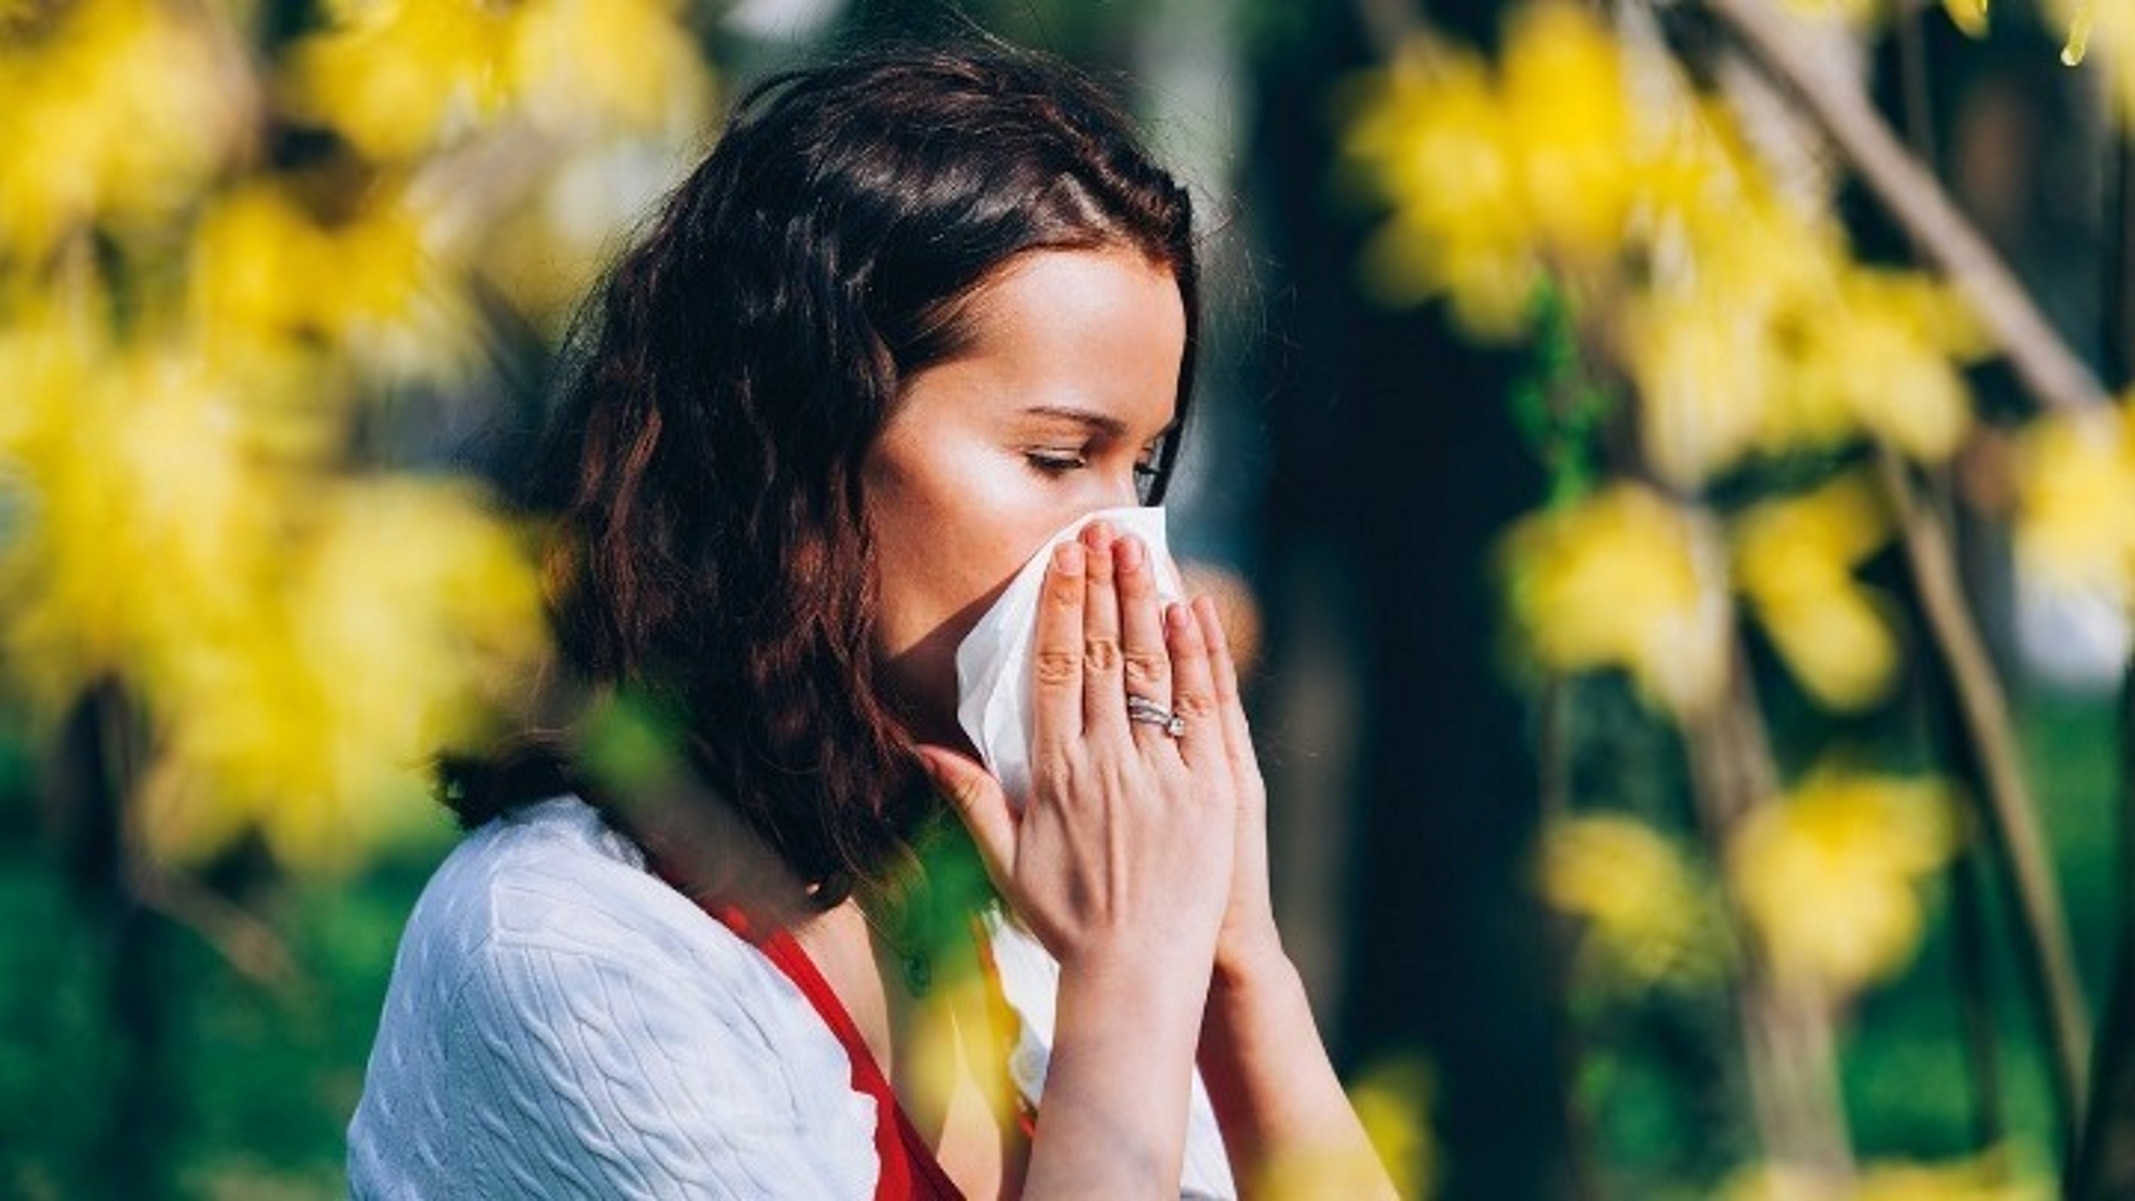 Κορονοϊός: Μικρότερος ο κίνδυνος λοίμωξης για ανθρώπους με αλλεργικές διαταραχές ιδίως αν έχουν και άσθμα